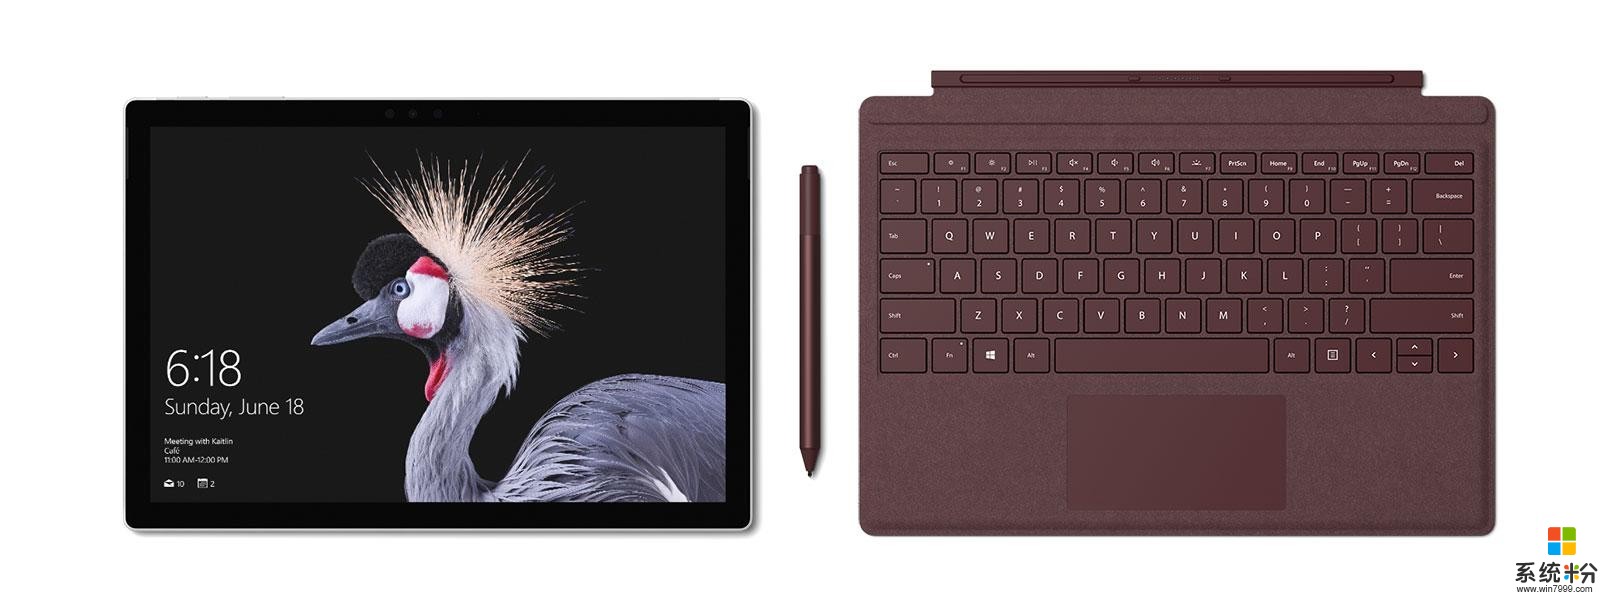 微軟發布全新Surface Pro: 入門版僅5888元 配4096級別壓感筆(1)